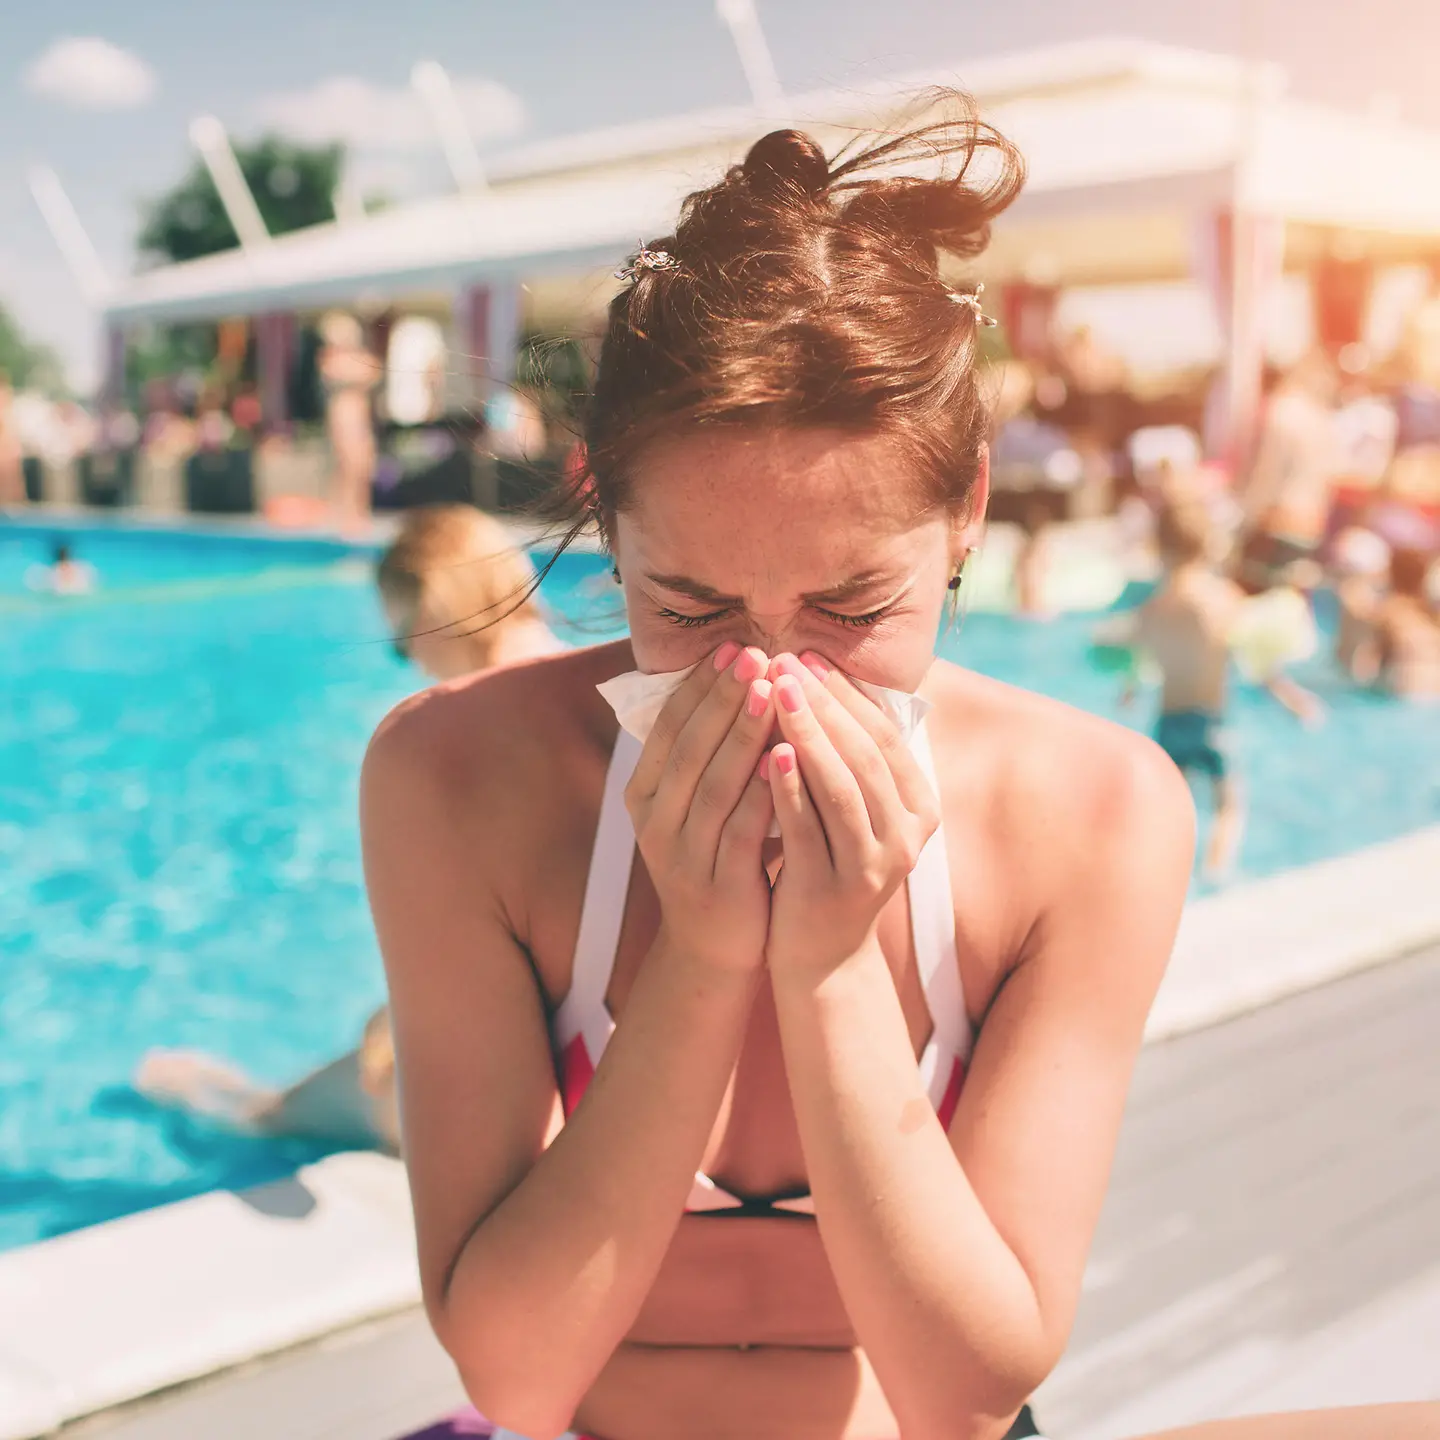 Das Bild zeigt eine Frau, die sich im Freibad ihre Nase putzt.